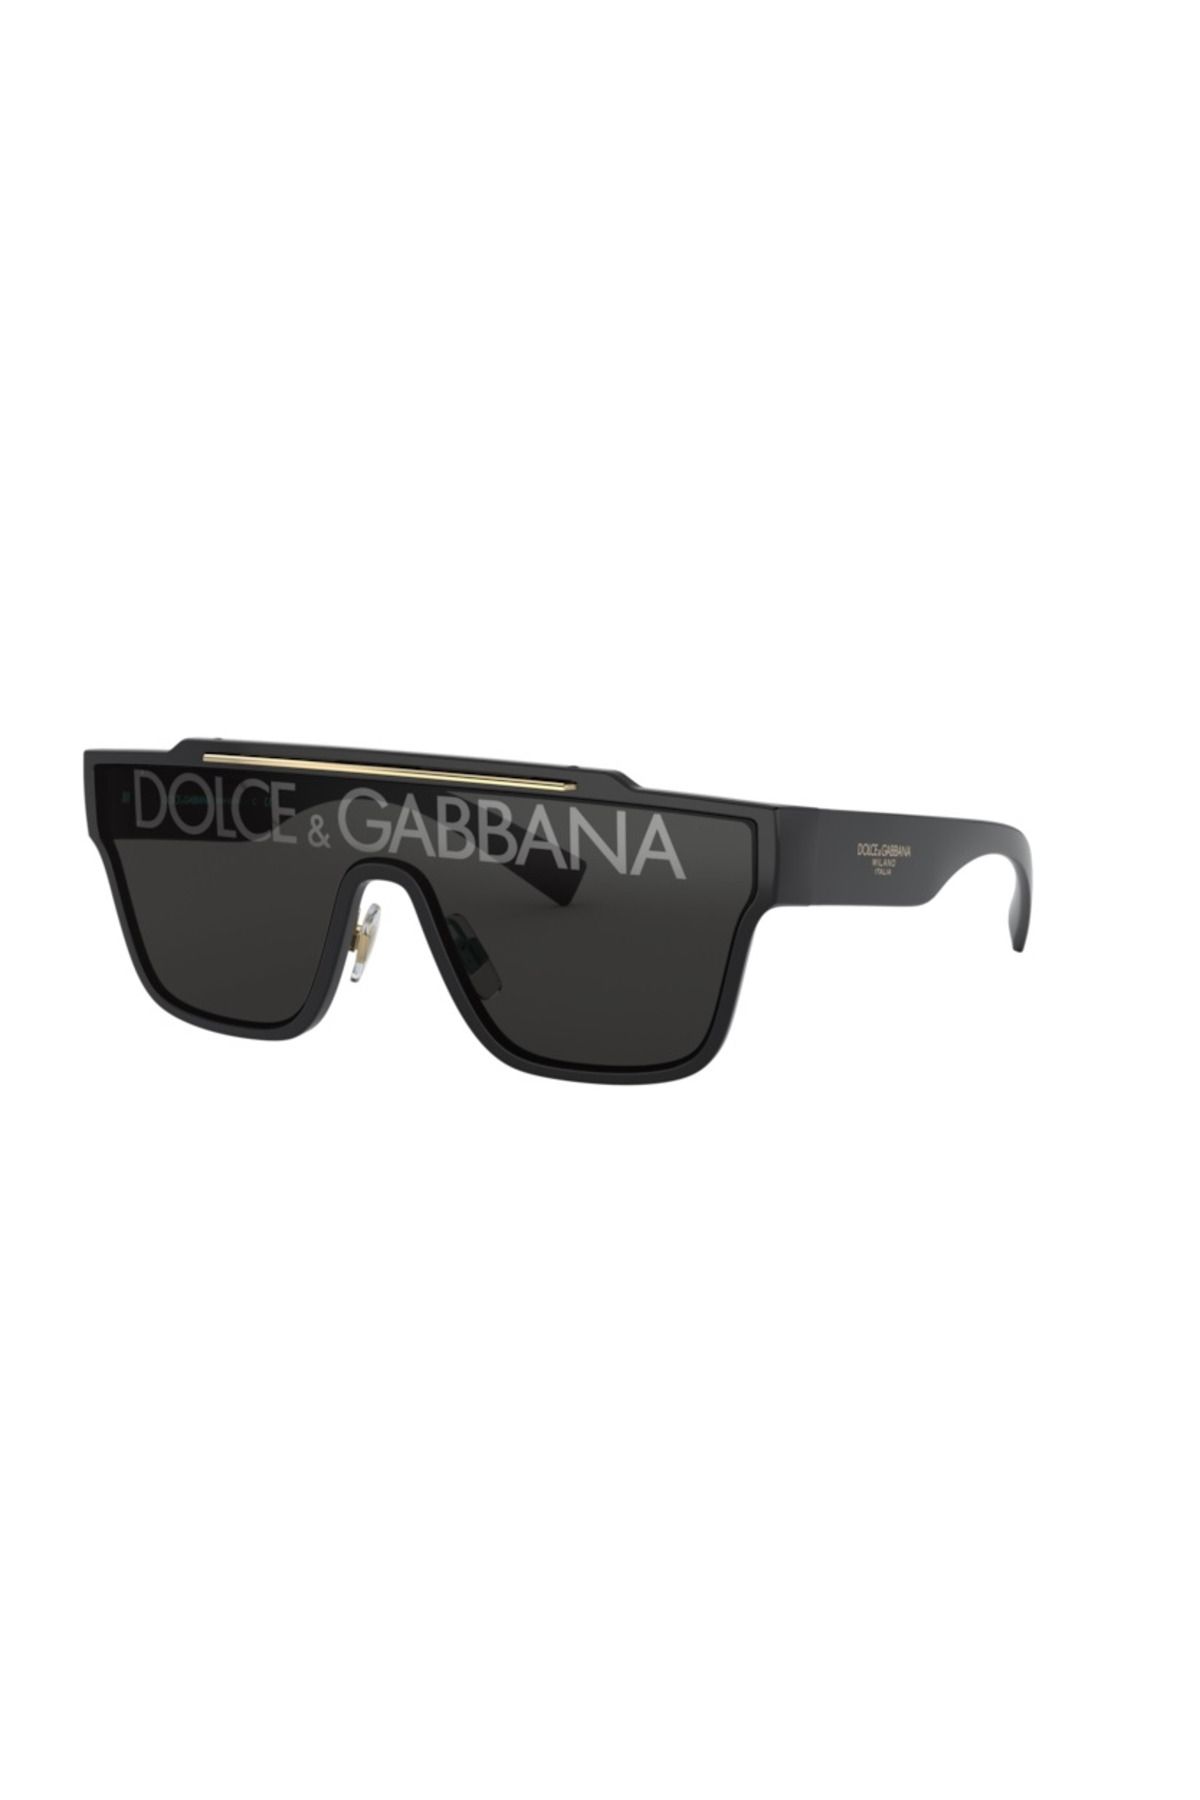 Dolce&Gabbana DOLCE & GABBANA 6125 501/M 35 Erkek Güneş Gözlüğü